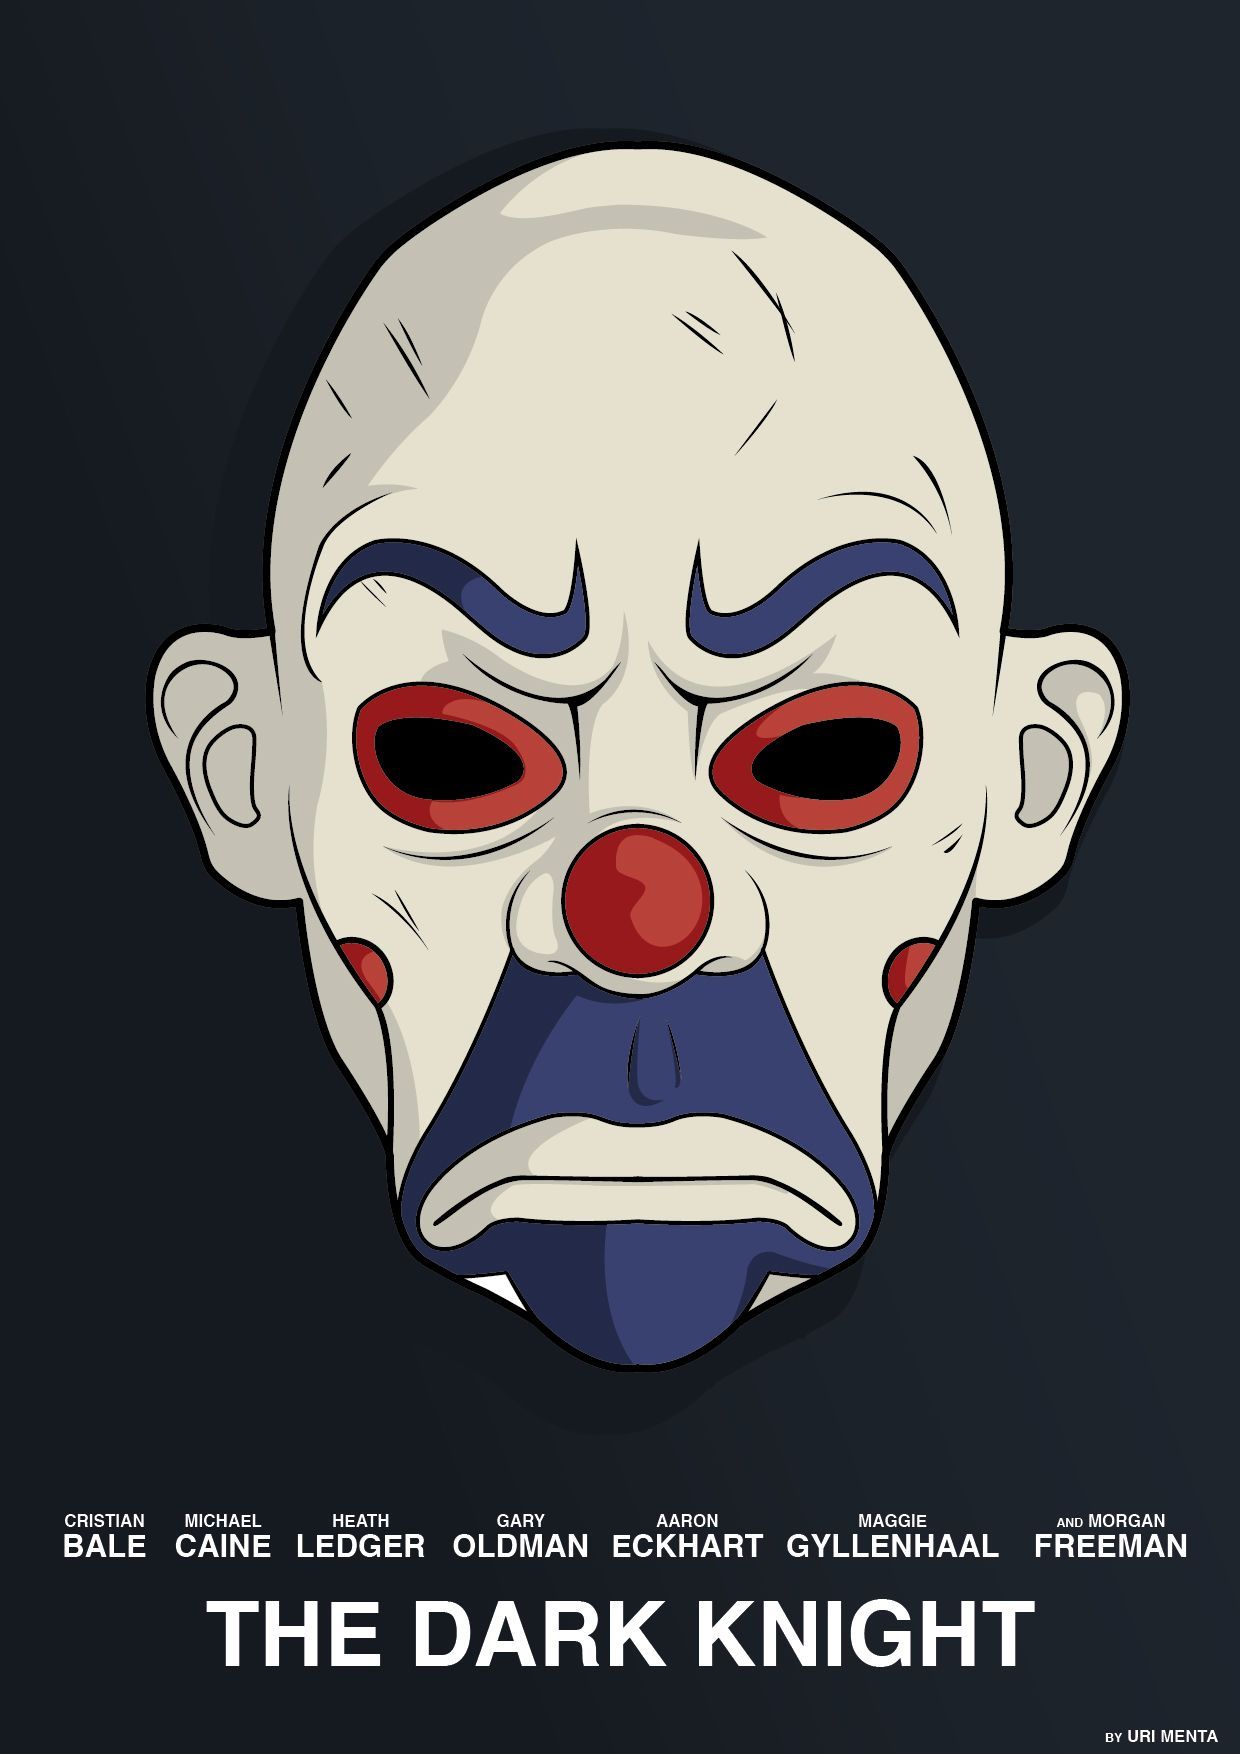 Joker's mask in the bank robbery movie poster #thejoker #batman #illustration. Joker artwork, Joker art, Joker mask